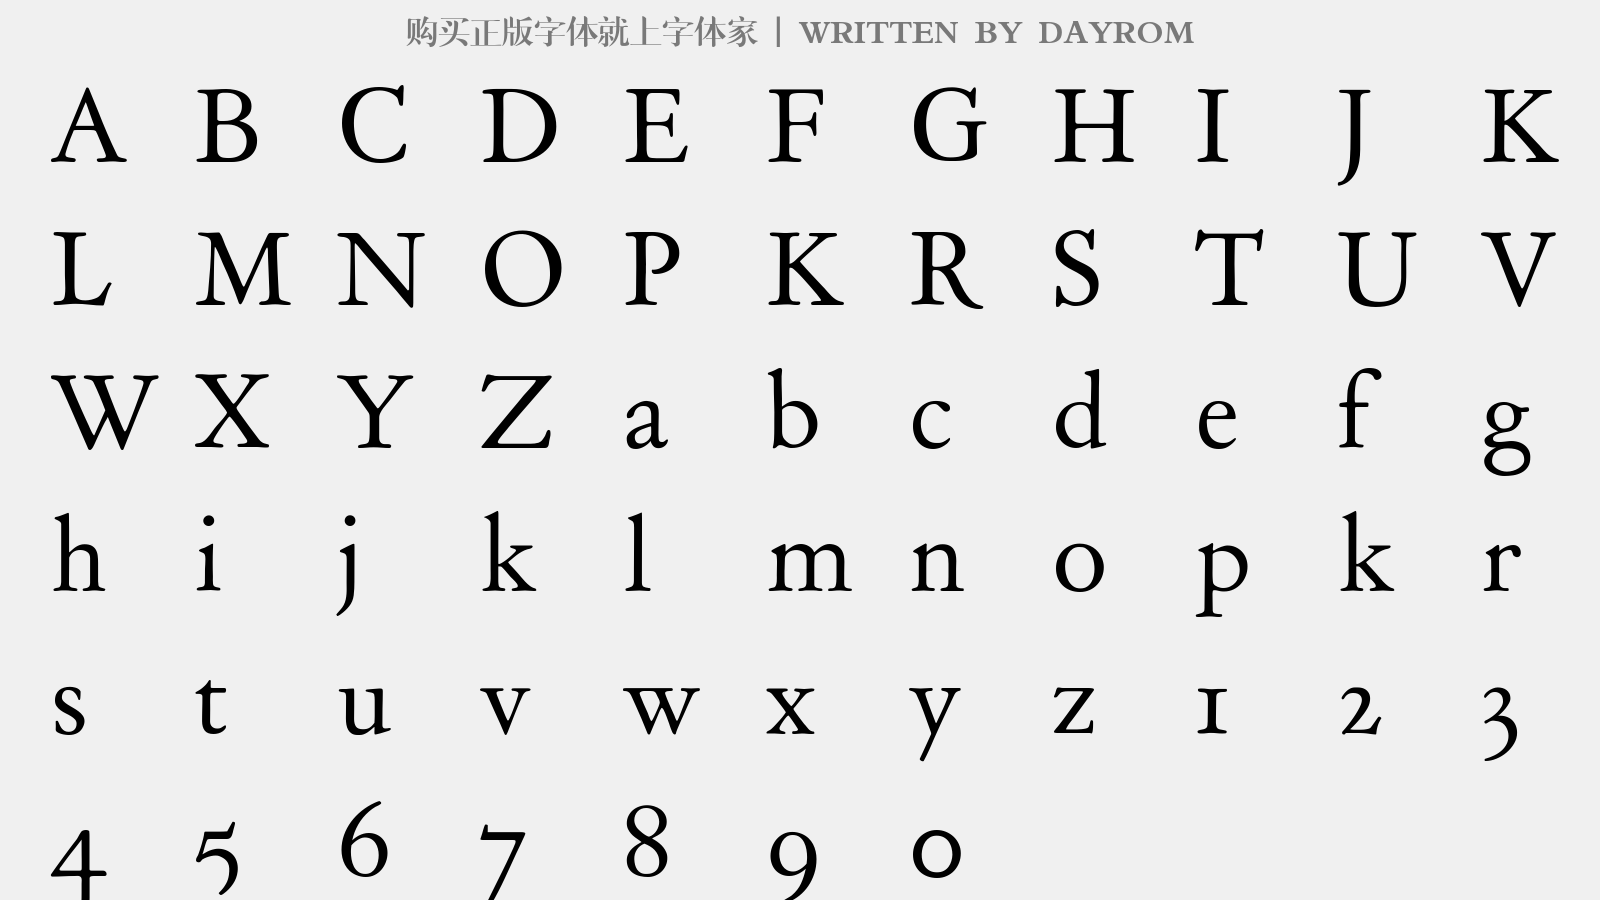 DAYROM - 大写字母/小写字母/数字